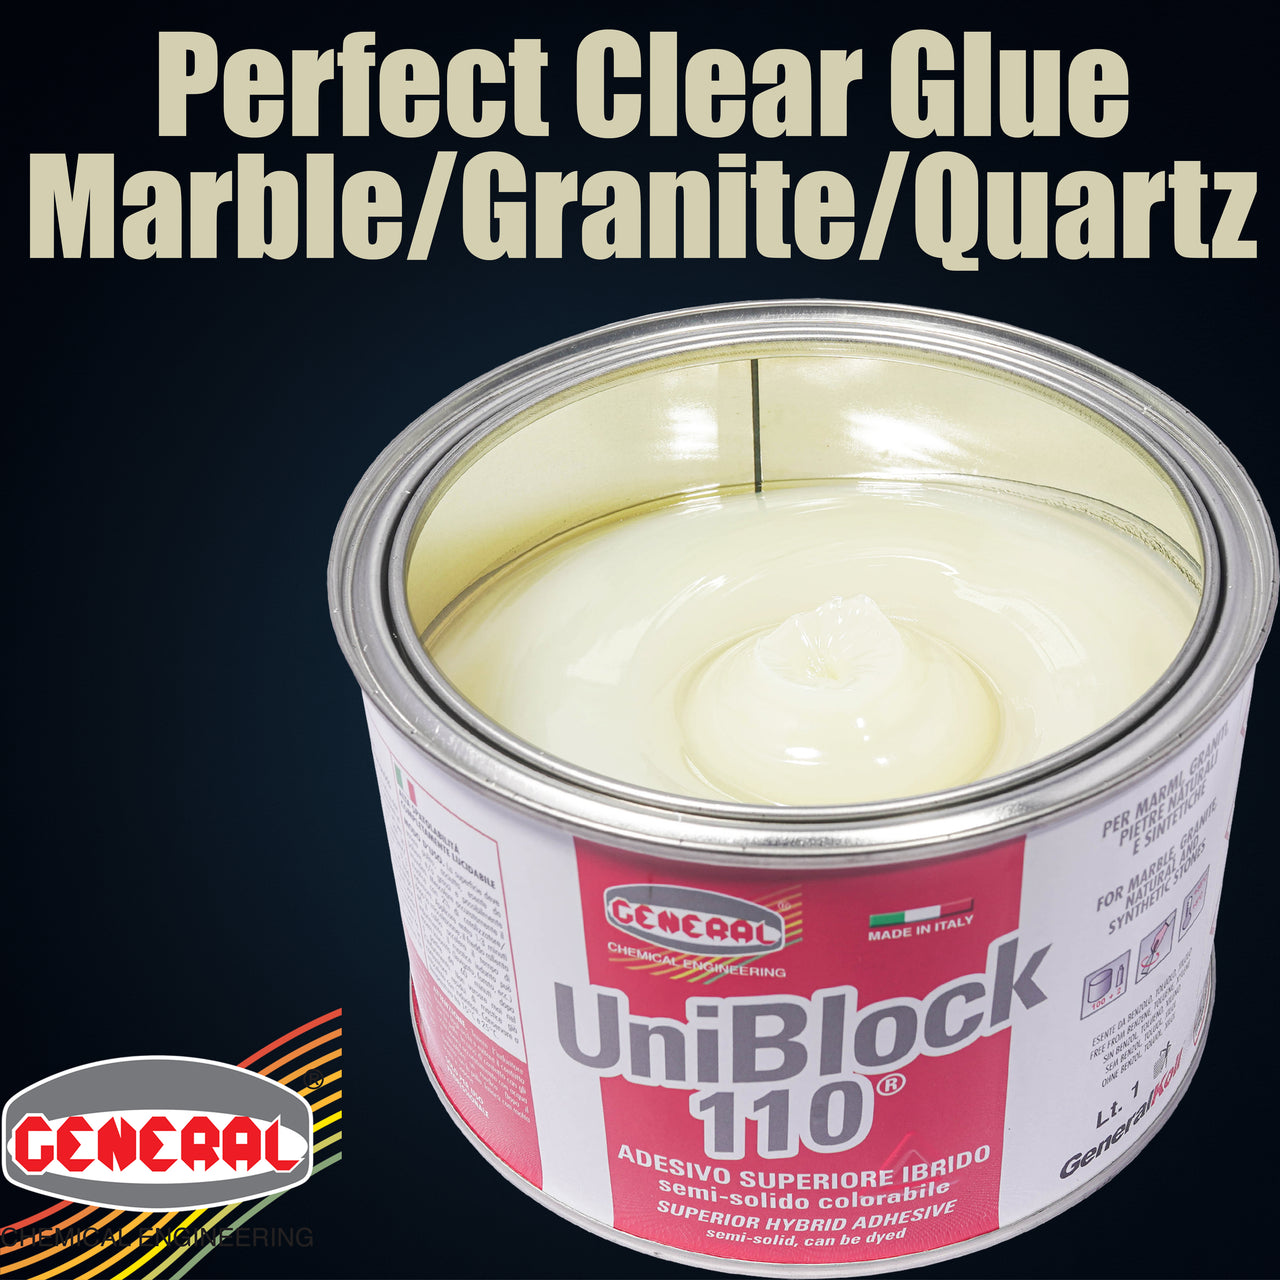 Uniblock 110H - Perfect Clear Glue